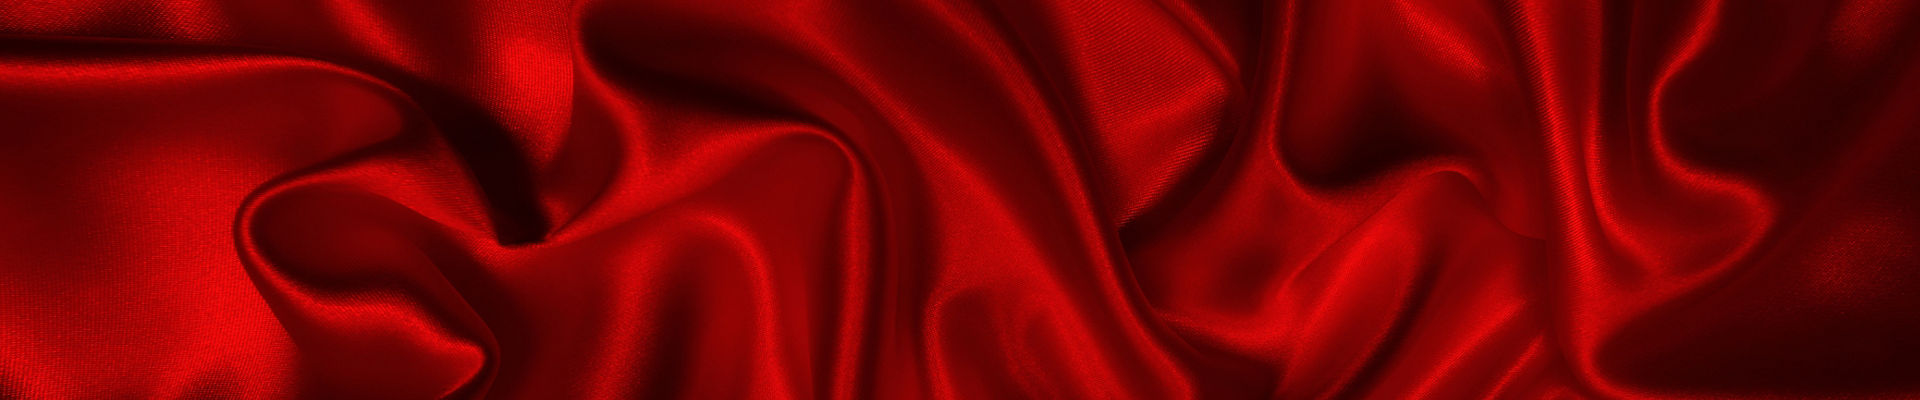 Ruffled red silk cloth